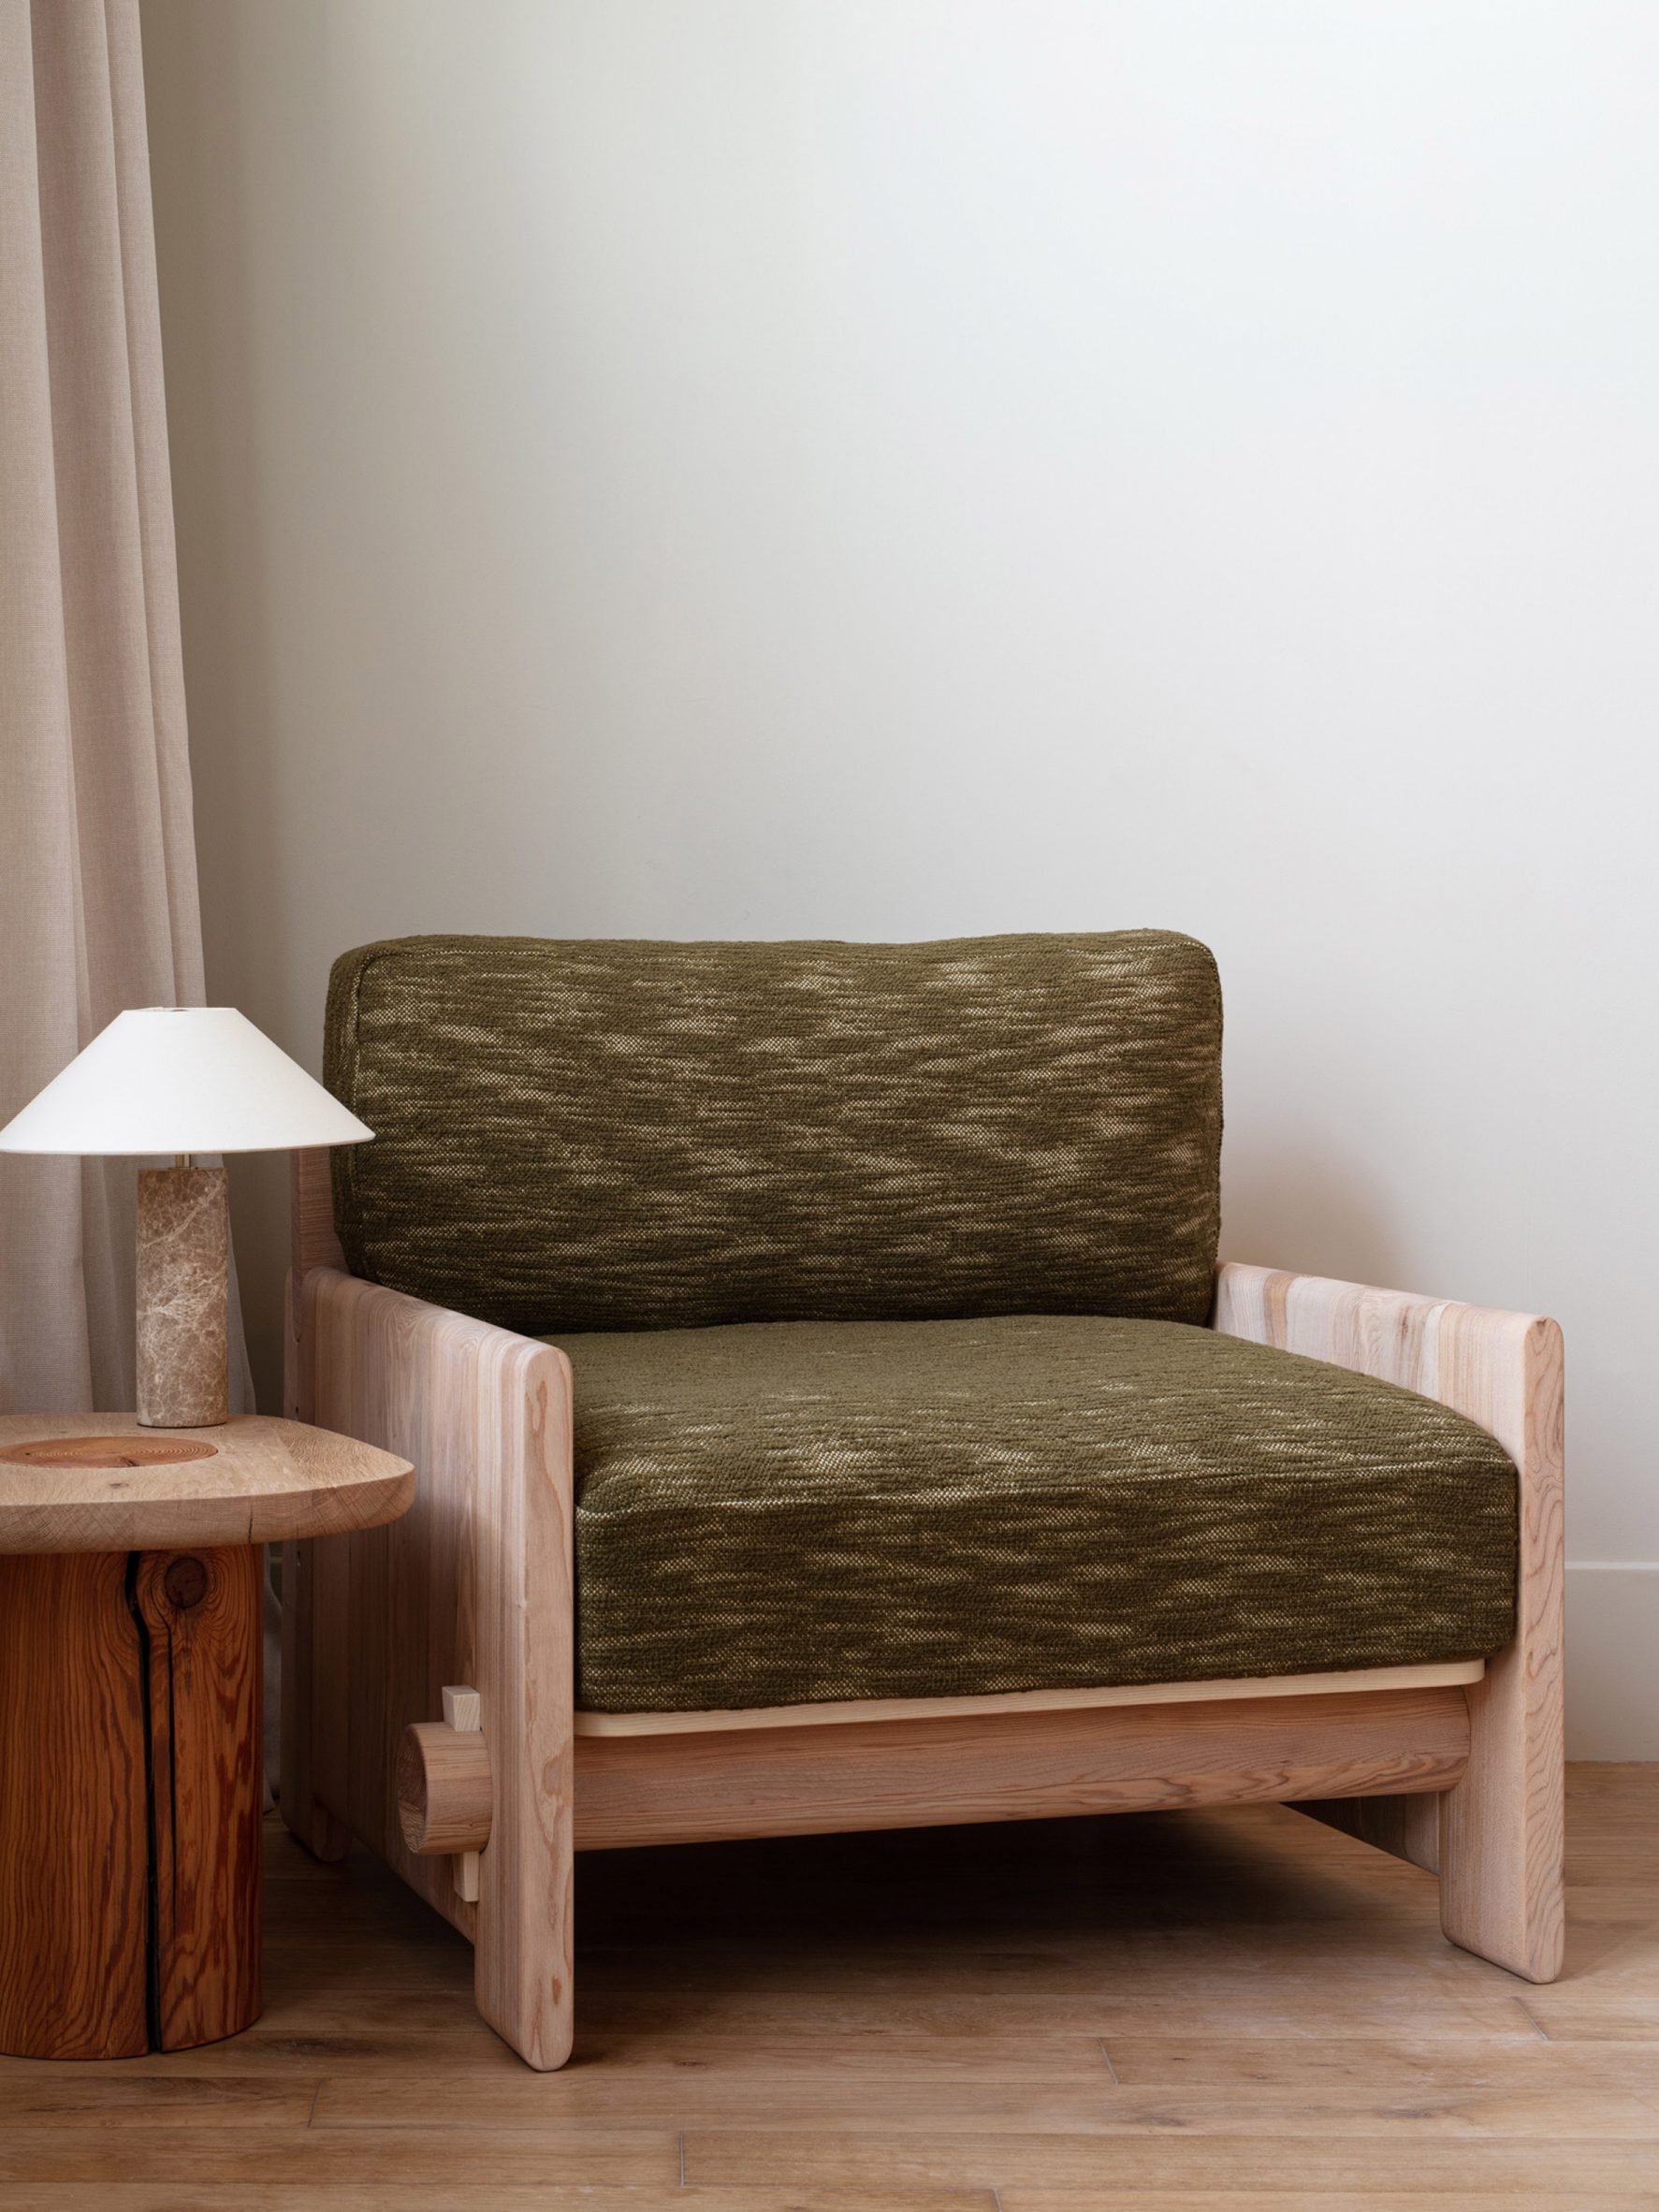 Green-upholsterd armchair by Jan Hendzel